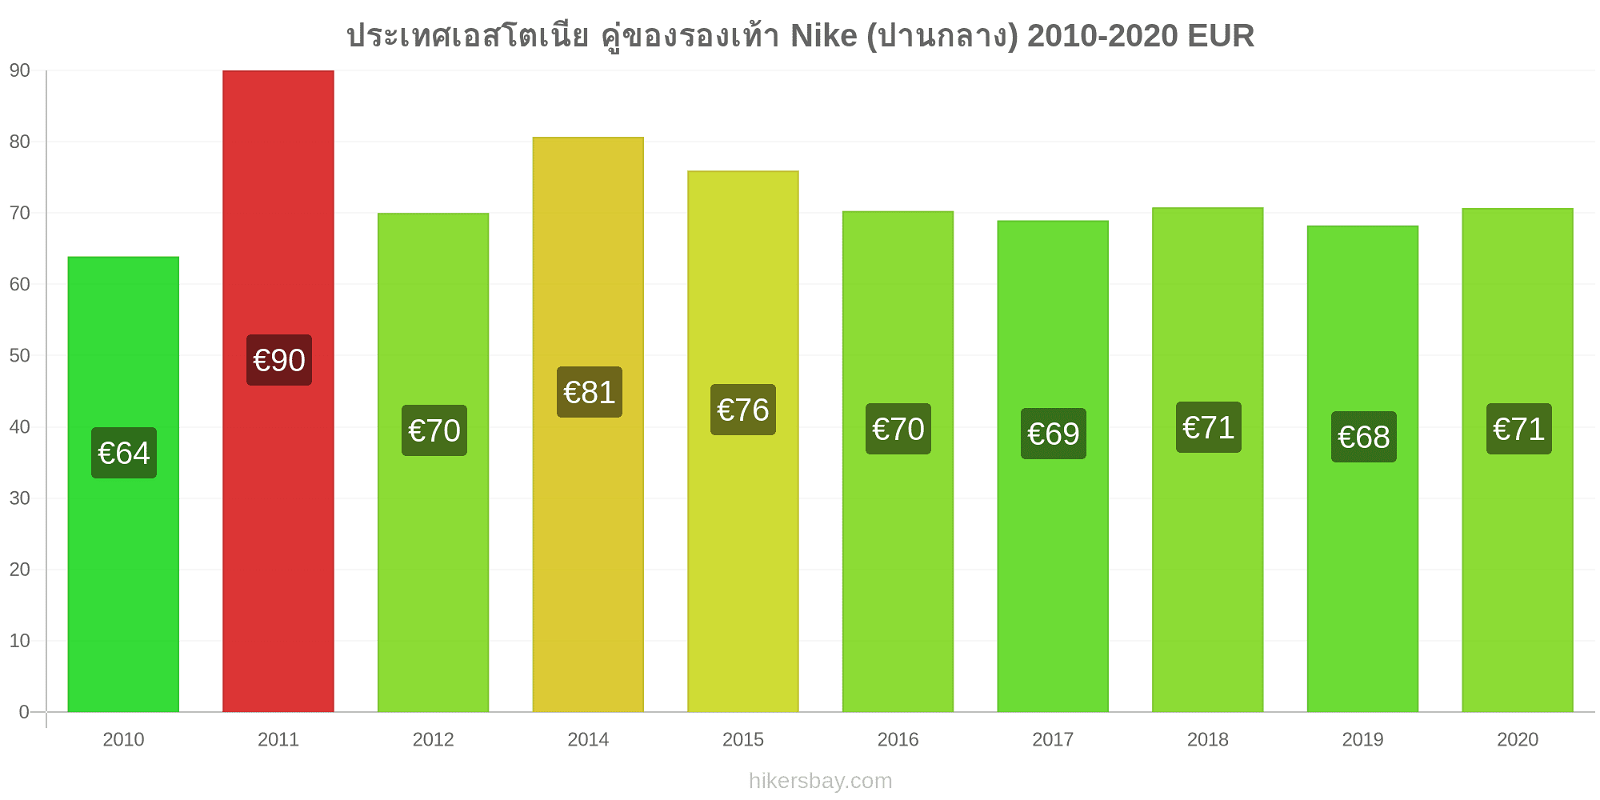 ประเทศเอสโตเนีย การเปลี่ยนแปลงราคา คู่ของรองเท้า Nike (ปานกลาง) hikersbay.com